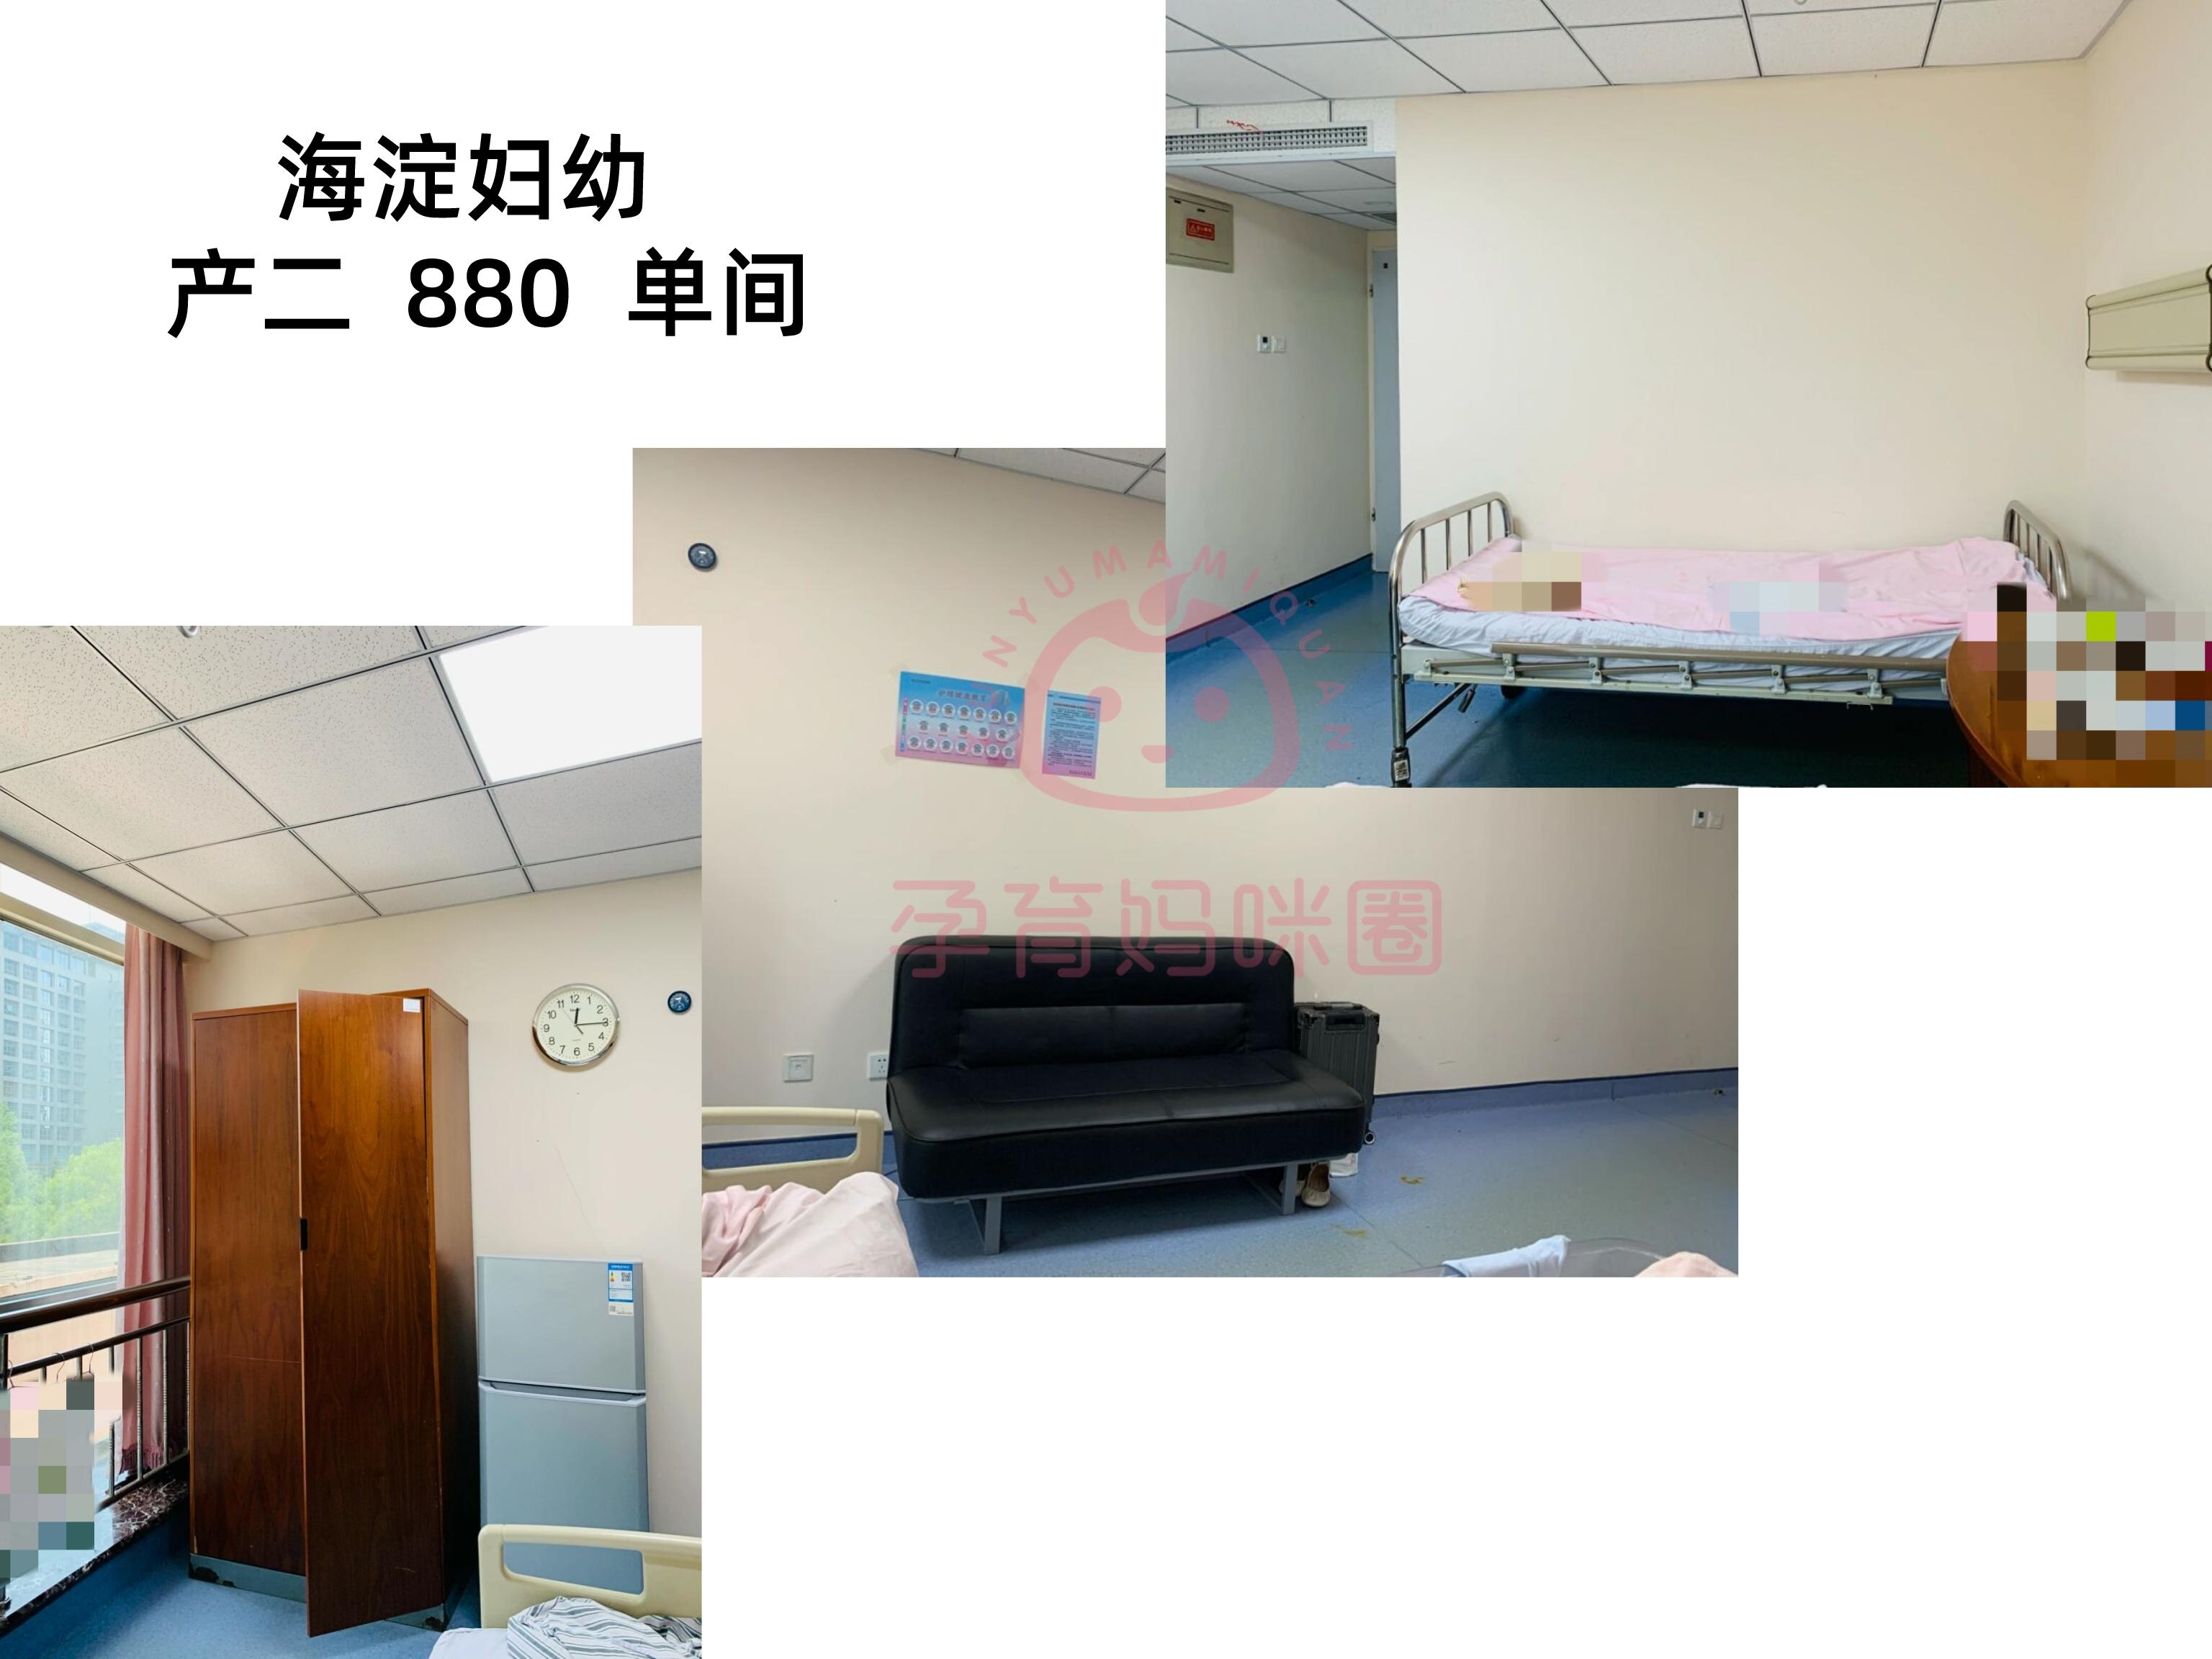 关于北京市海淀妇幼保健院跑腿挂号服务，深受患者信赖的信息